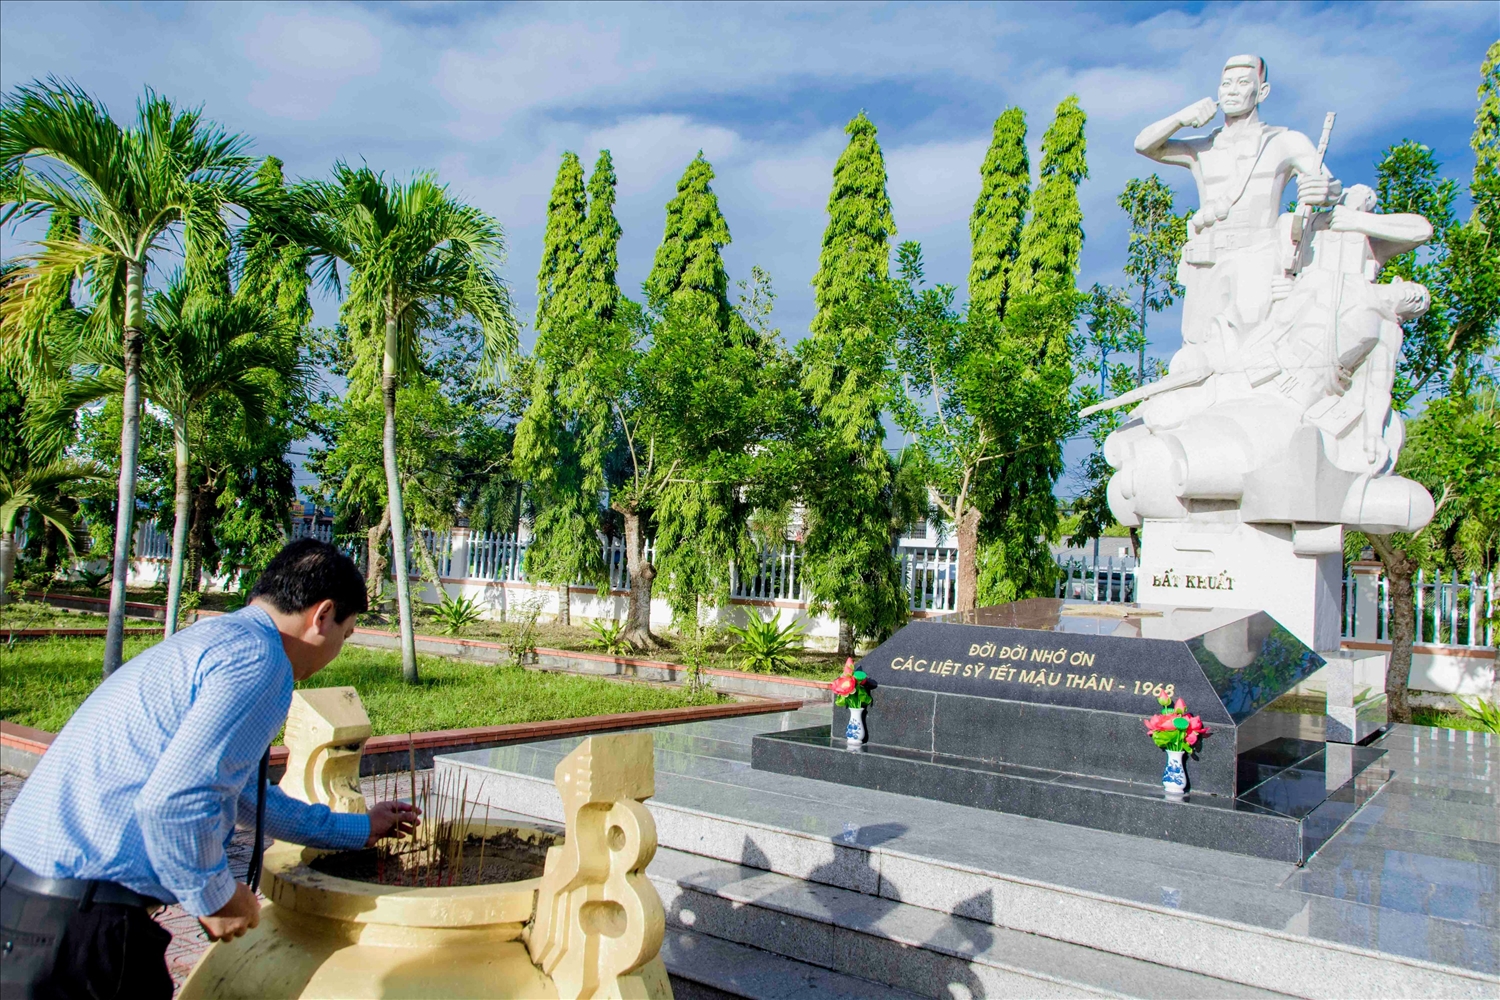  Bí thư Tỉnh ủy, Chủ tịch HĐND tỉnh Cà Mau Nguyễn Tiến Hải dâng hương trước tượng đài các Liệt sĩ Tết Mậu Thân (1968) tại Nghĩa trang liệt sĩ tỉnh Cà Mau